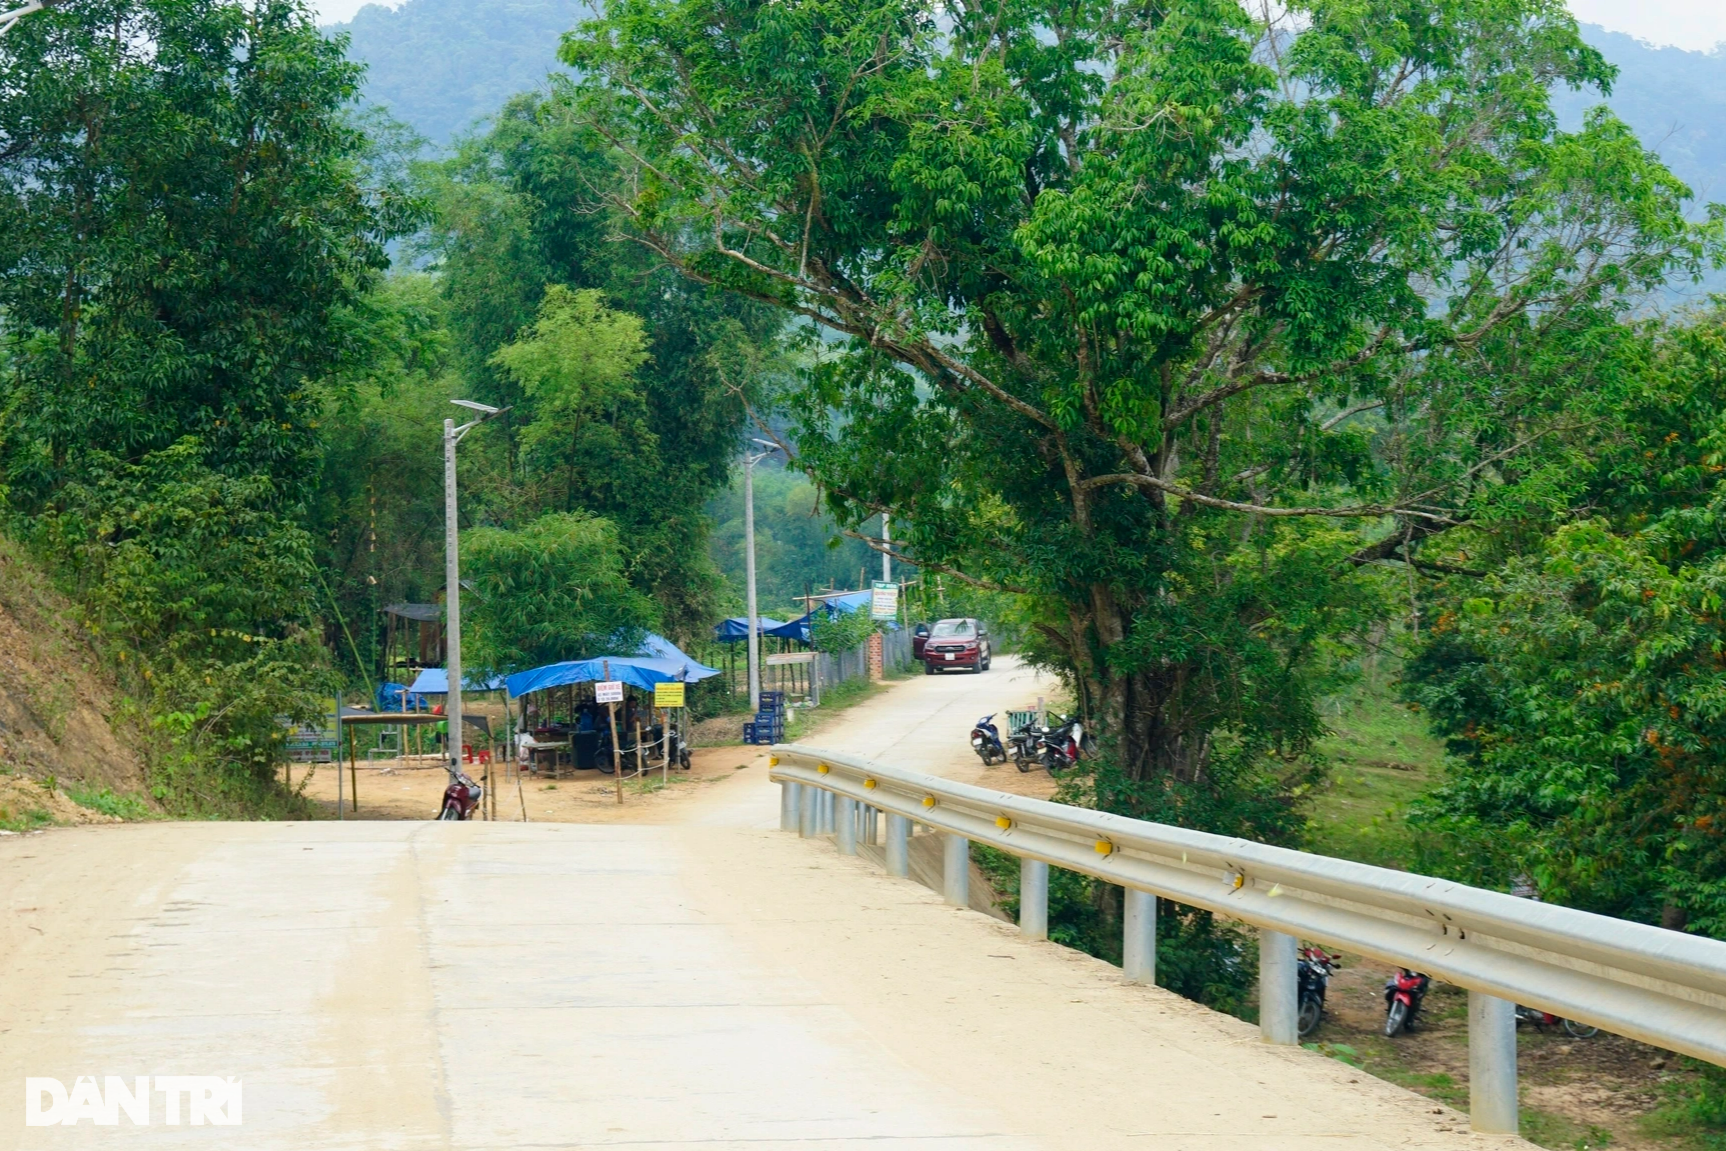 View - Trang rừng bung nở giữa rừng hút khách check-in ở Bình Định | Báo Dân trí